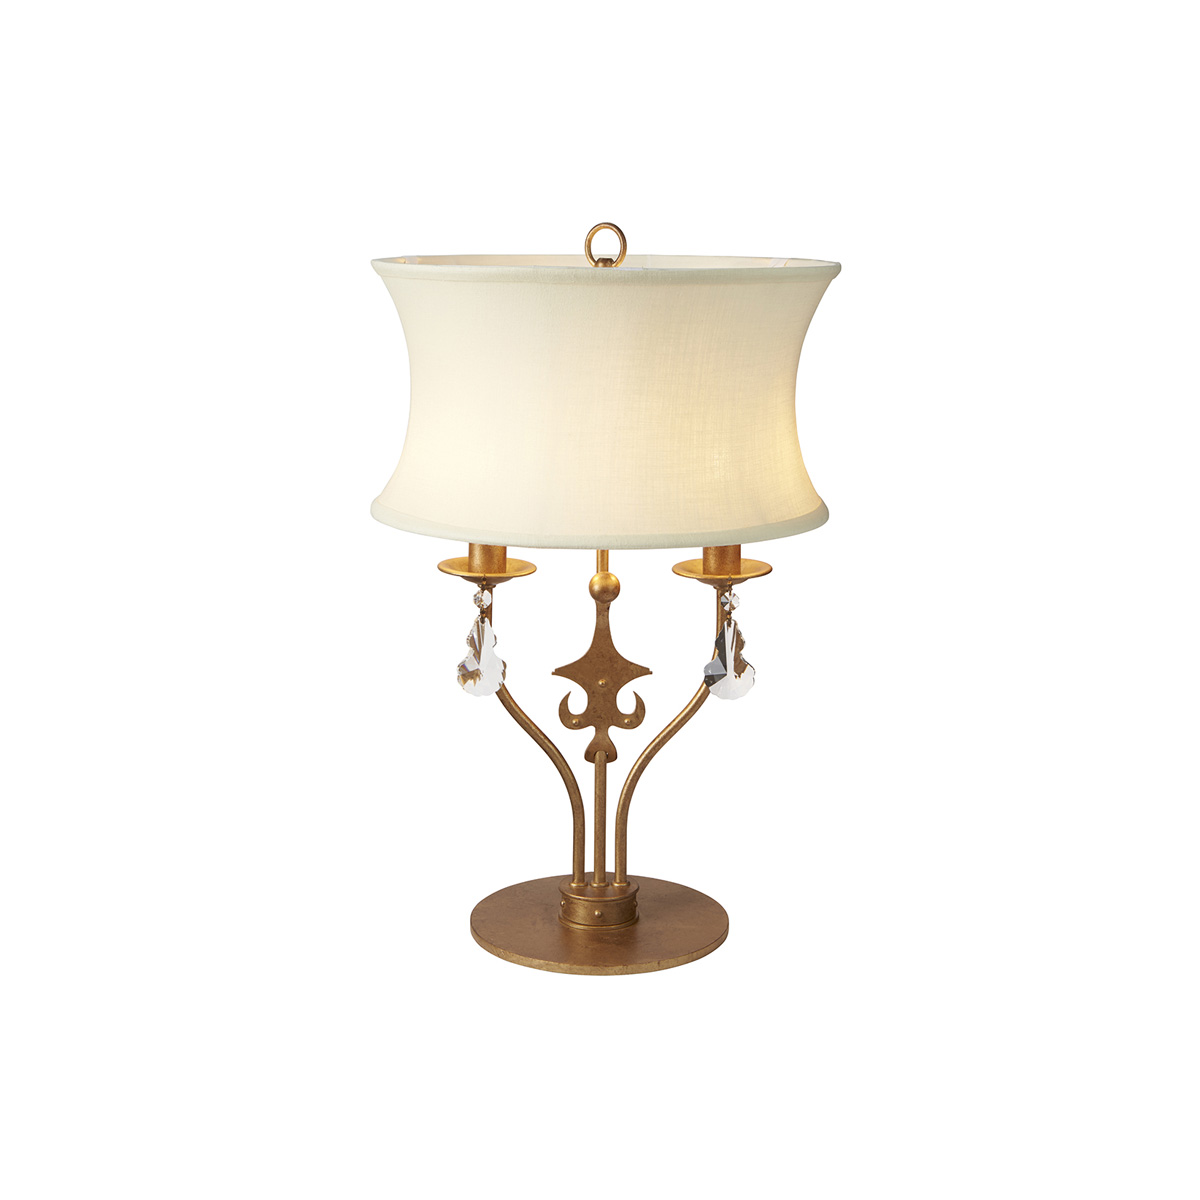 Настольная лампа WINDSOR-TL-GOLD. Бренд: Elstead Lighting. Настольные лампы